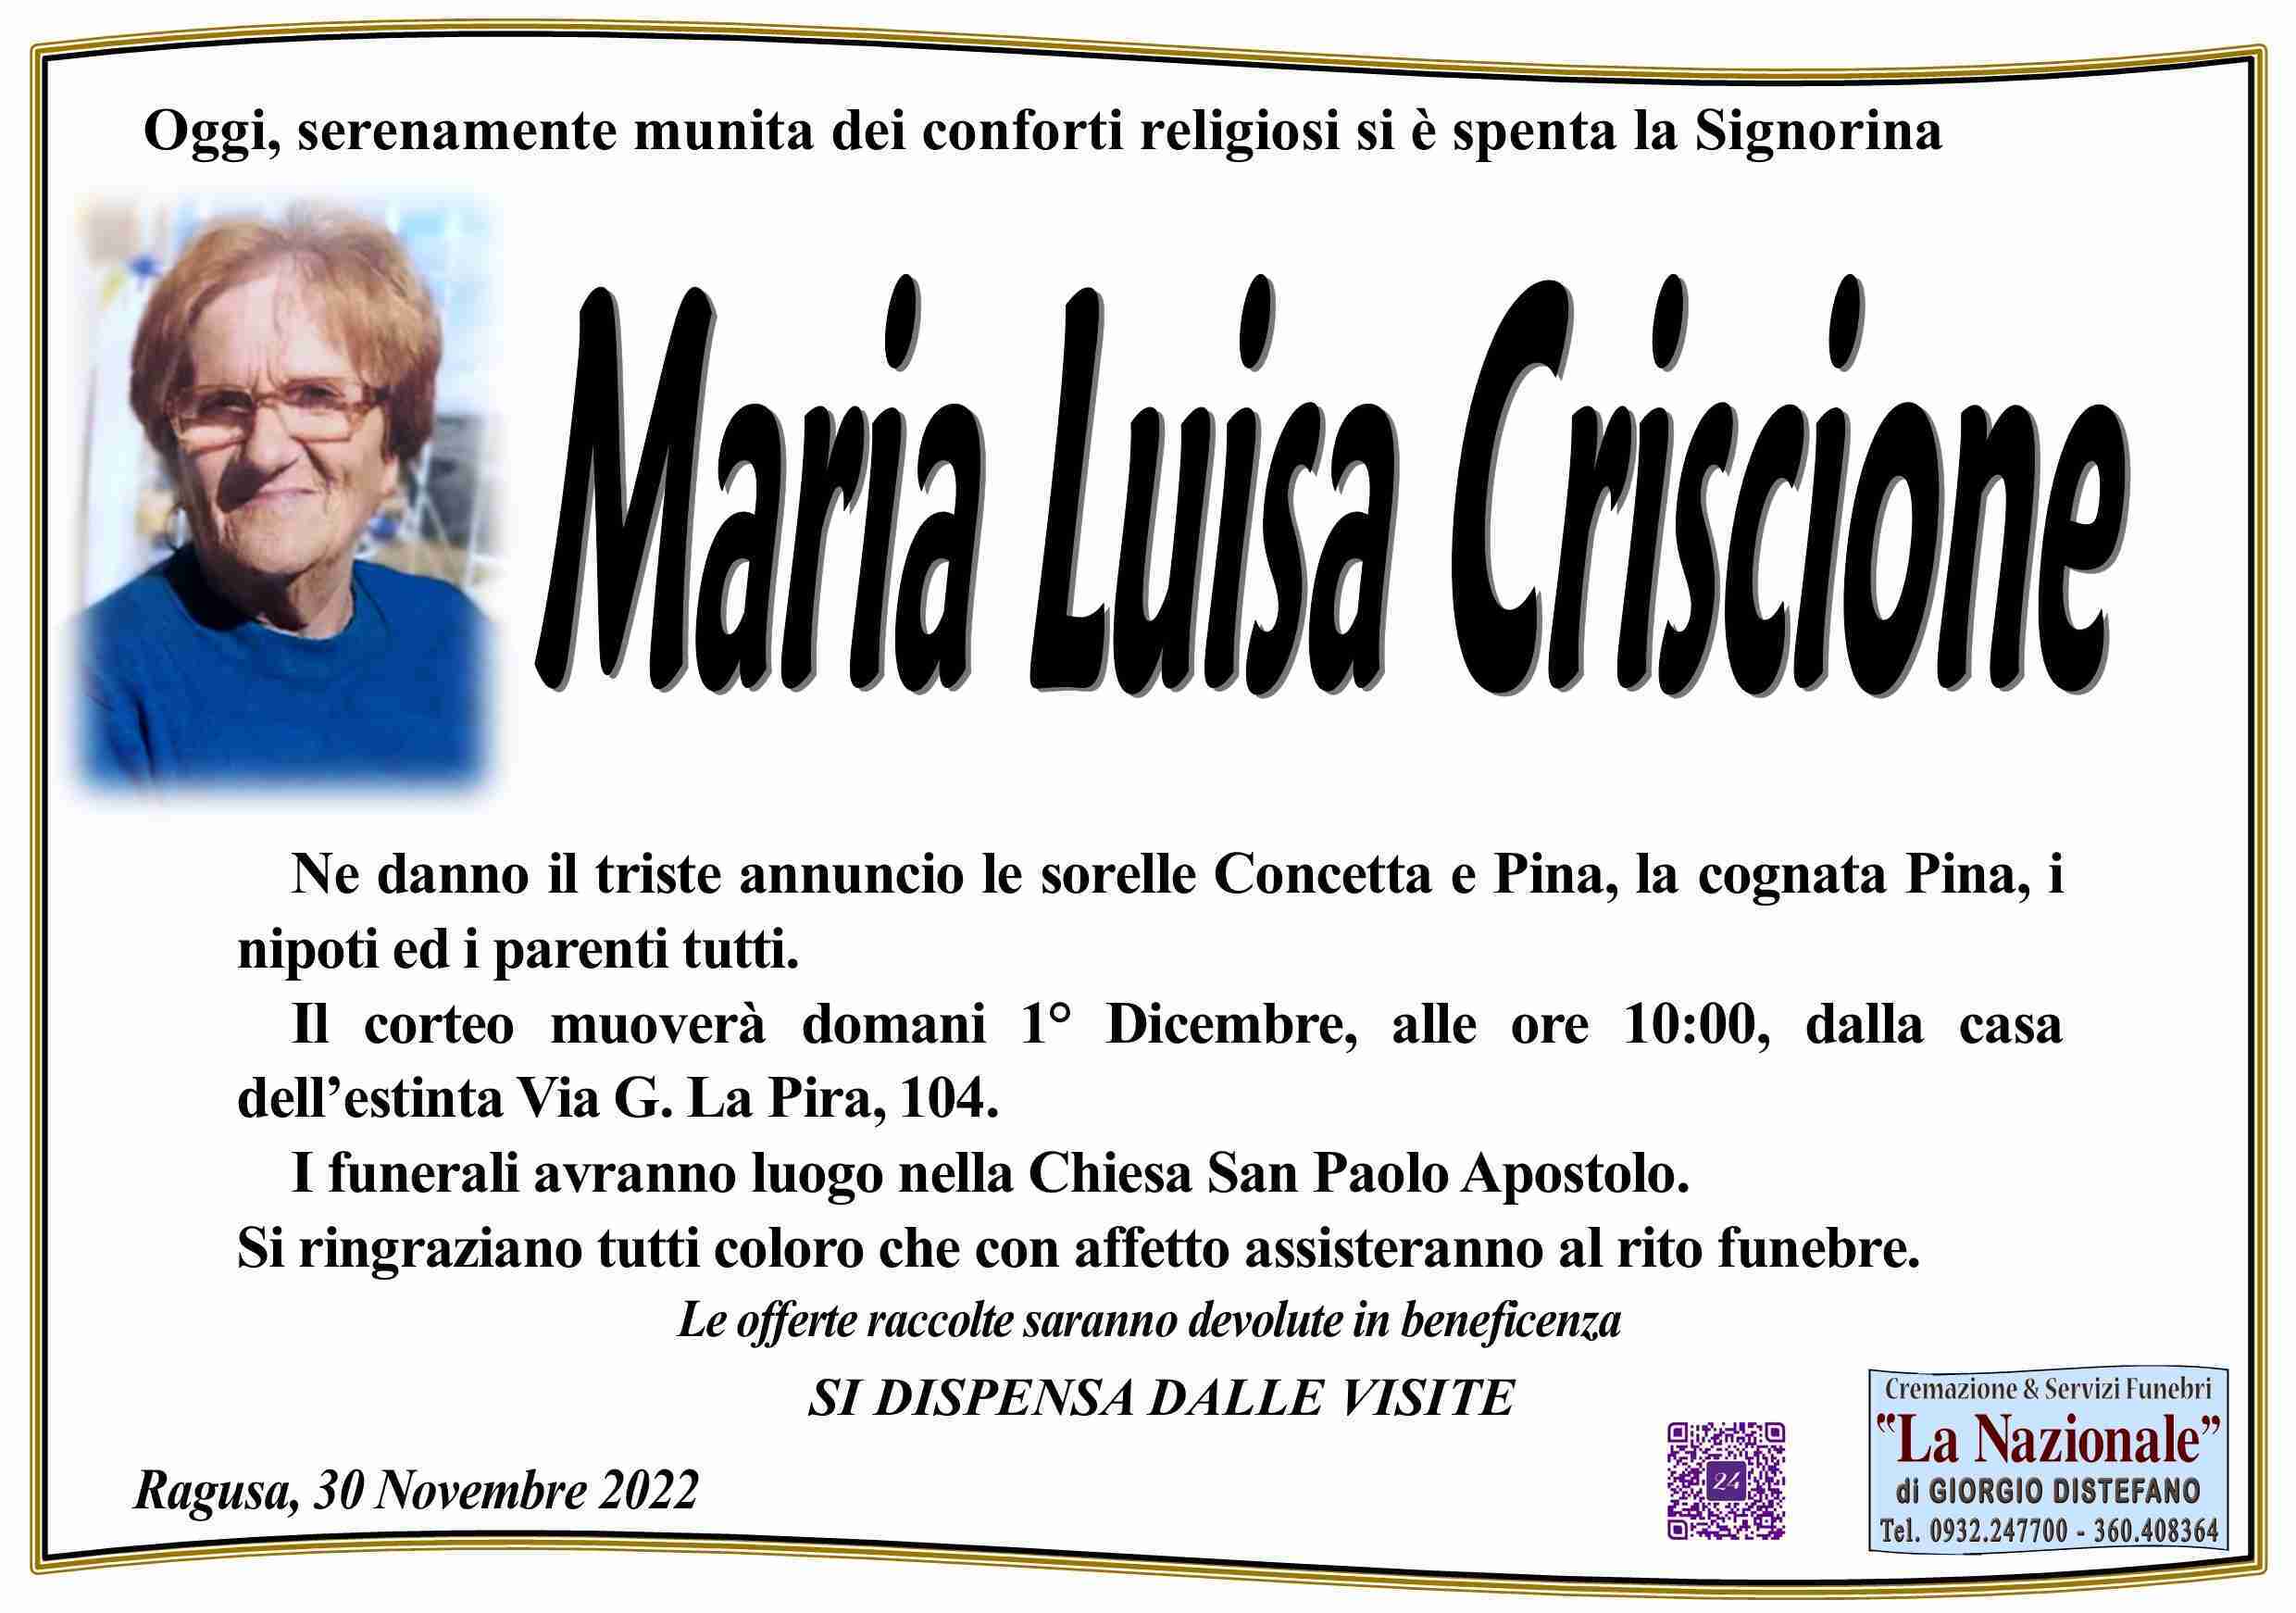 Maria Luisa Criscione